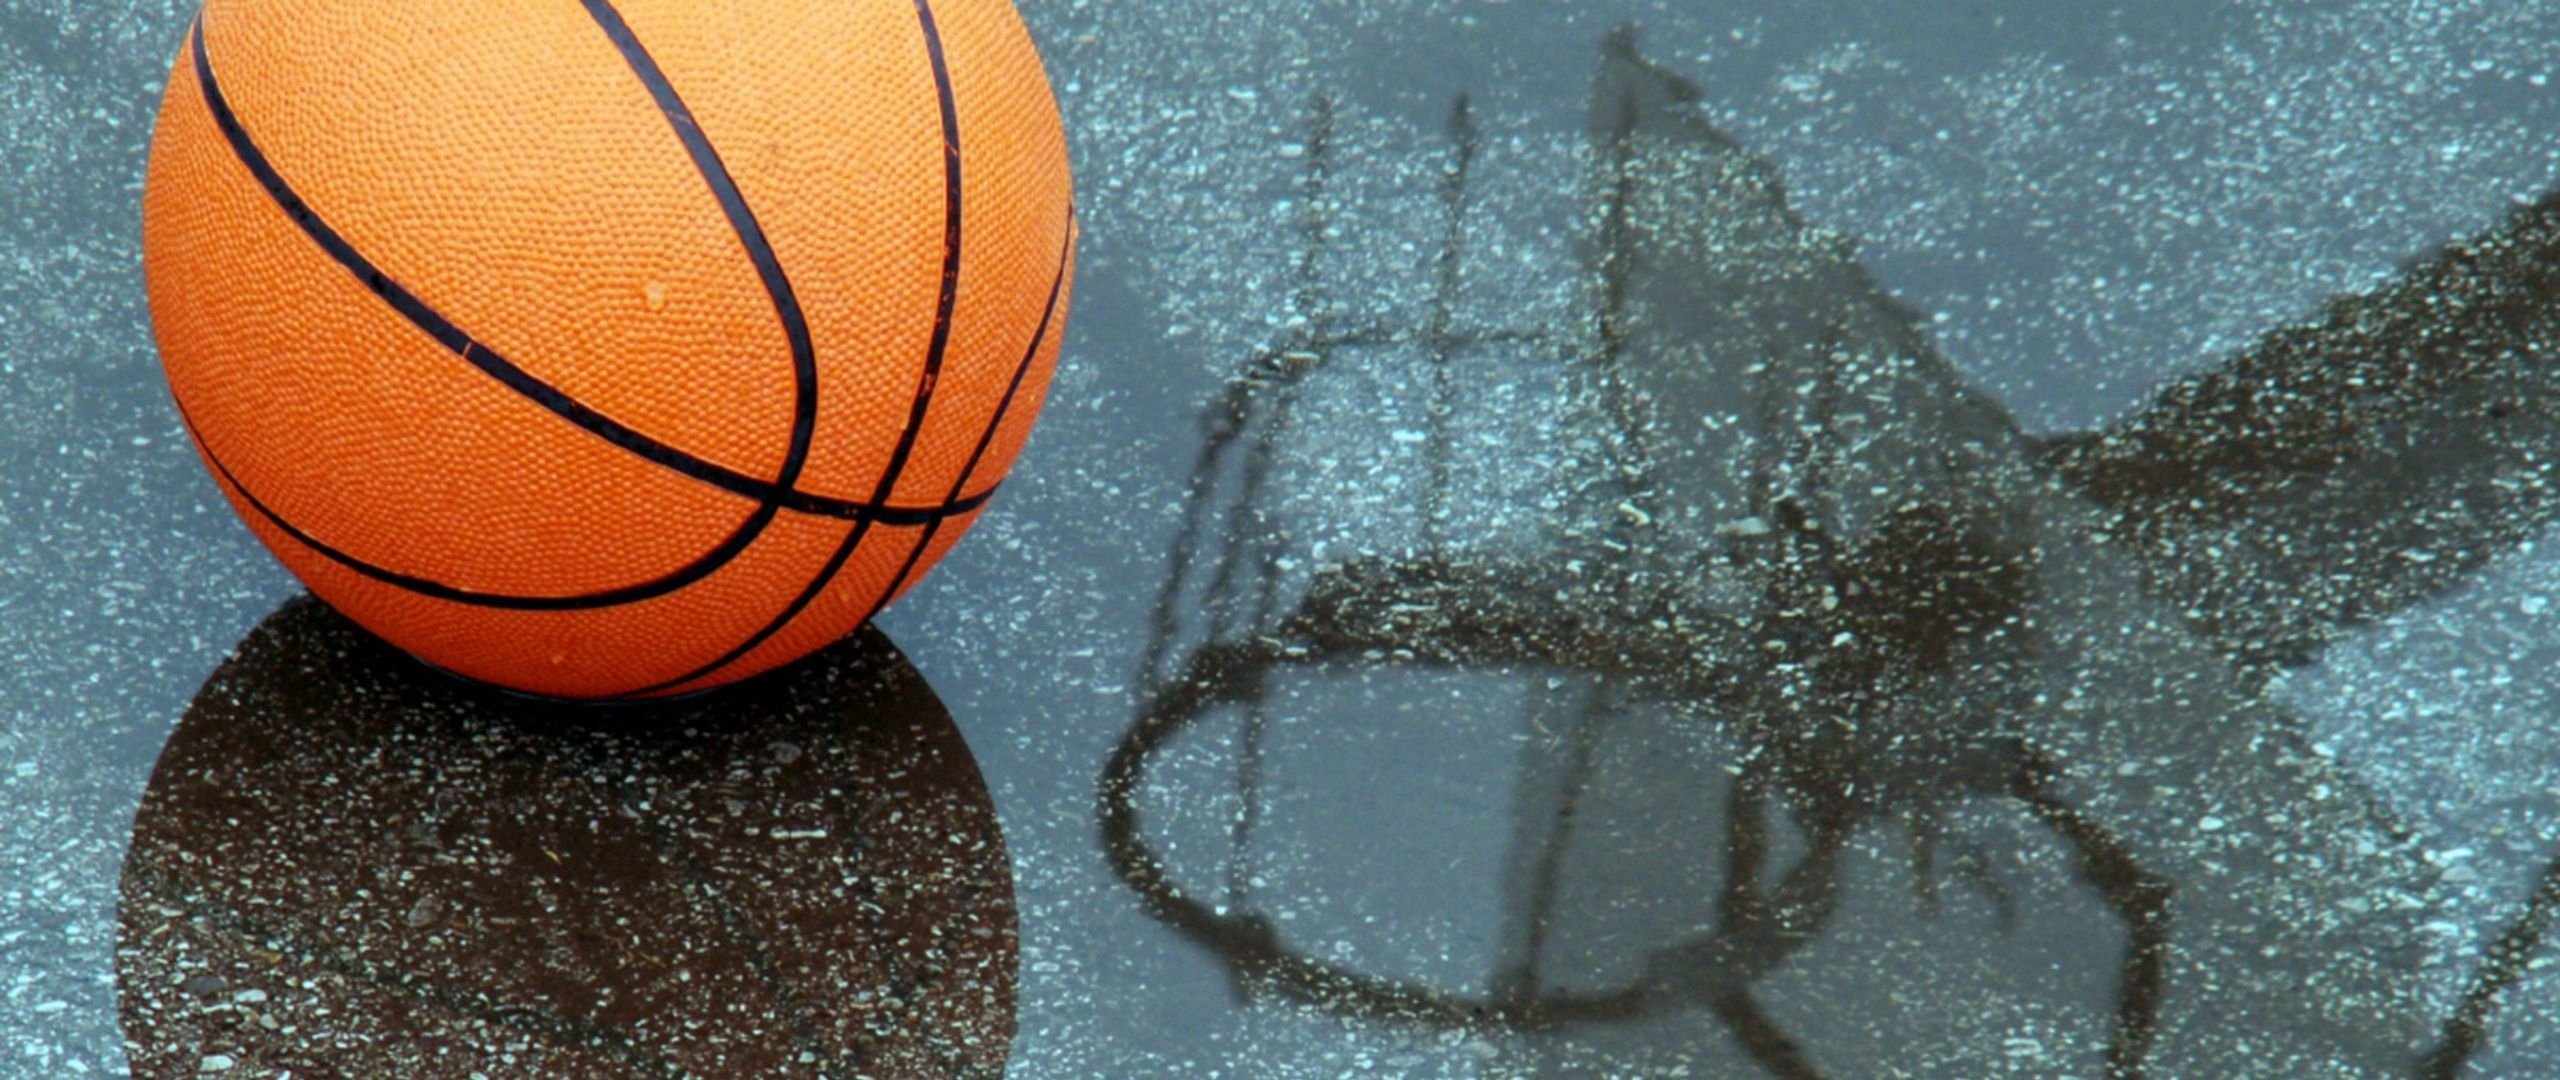 Спортивный мяч в баскетболе. Баскетбольный мяч. Баскетбольный мяч на площадке. Красивые баскетбольные мячи. Баскетбольный мяч на асфальте.